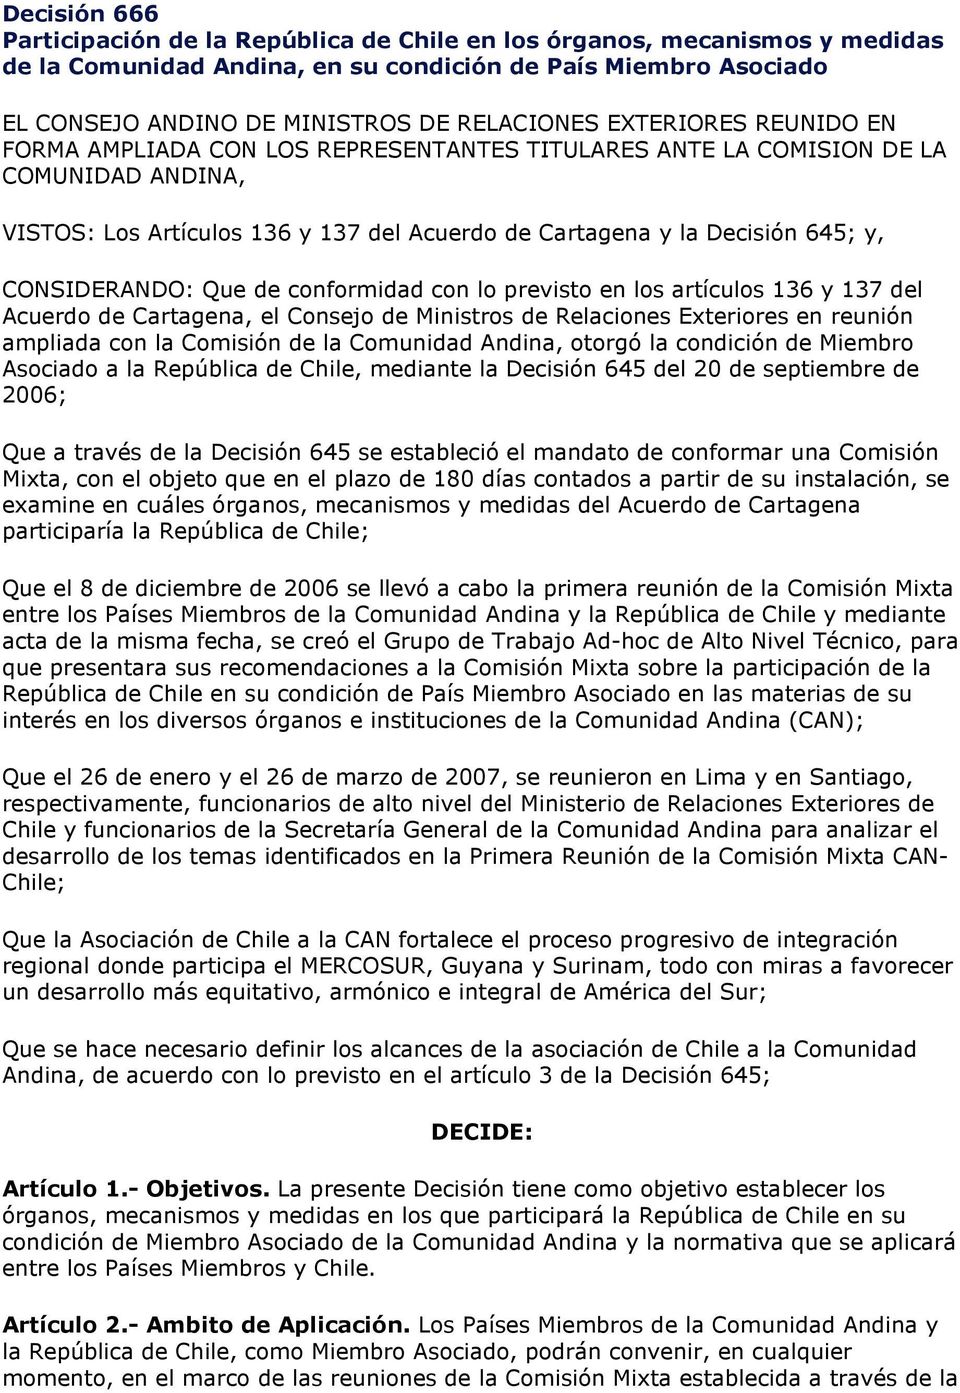 CONSIDERANDO: Que de conformidad con lo previsto en los artículos 136 y 137 del Acuerdo de Cartagena, el Consejo de Ministros de Relaciones Exteriores en reunión ampliada con la Comisión de la